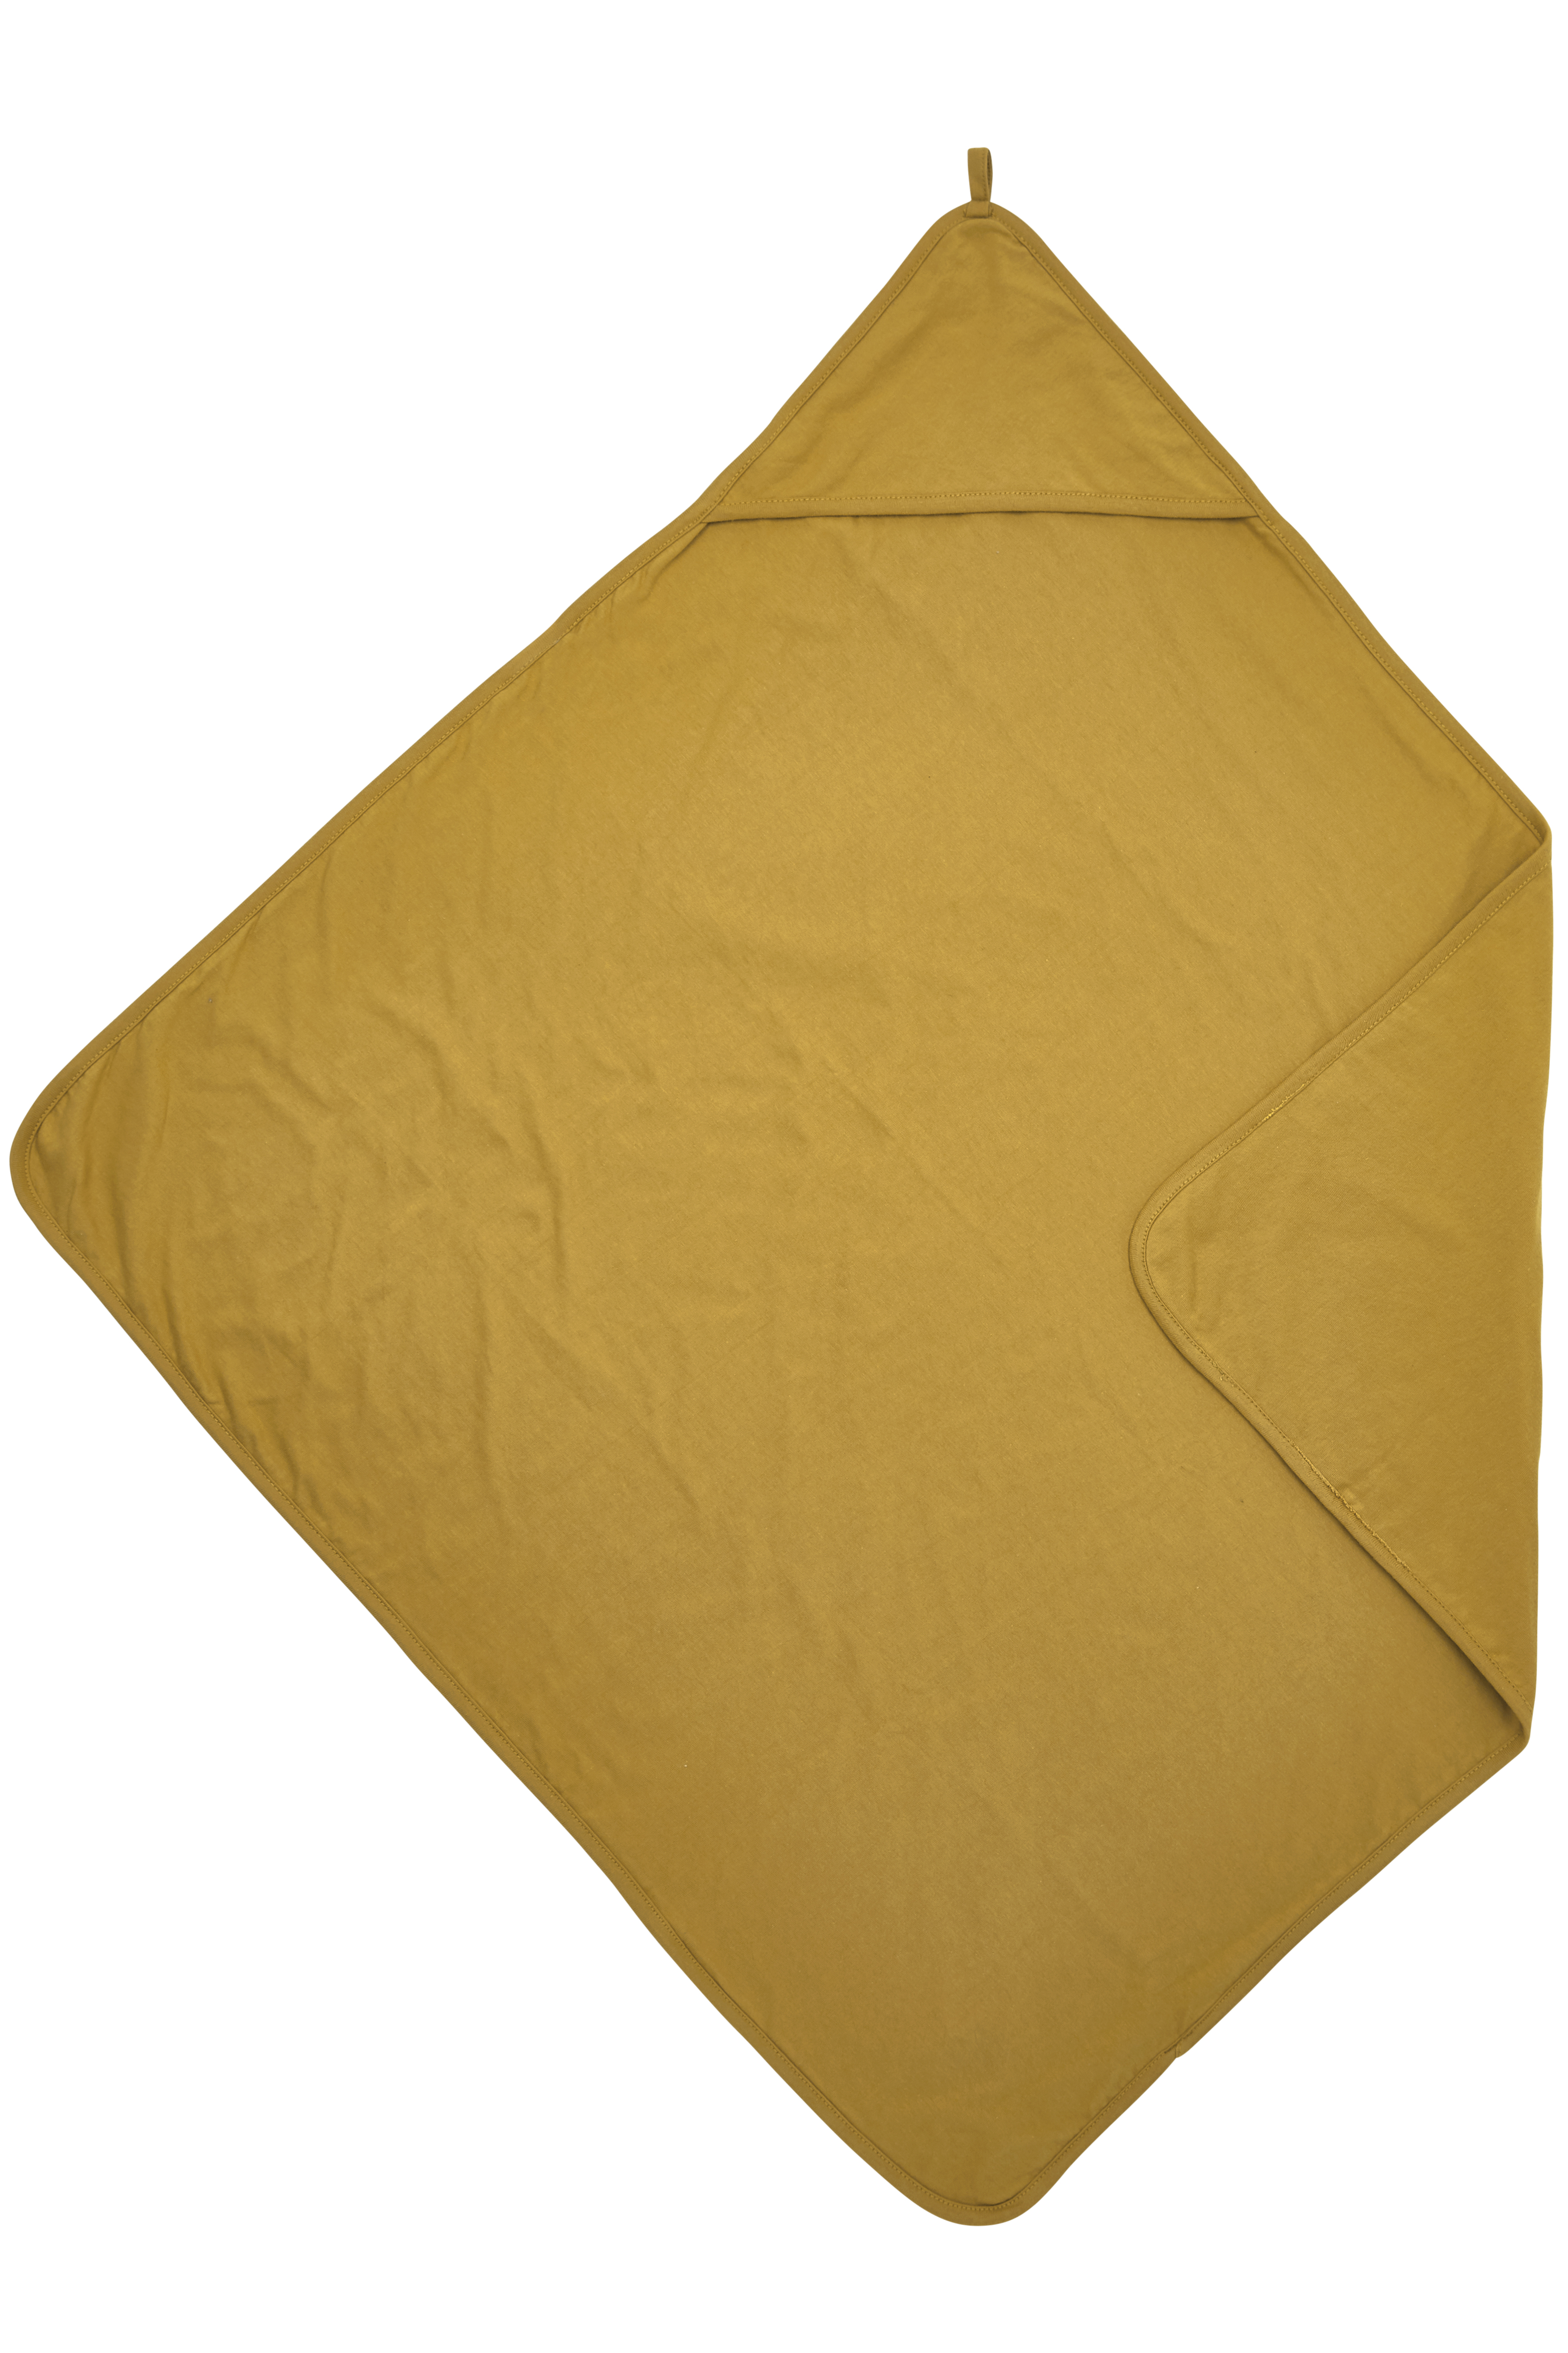 Badcape Basic Jersey - Honey Gold - 80x80cm